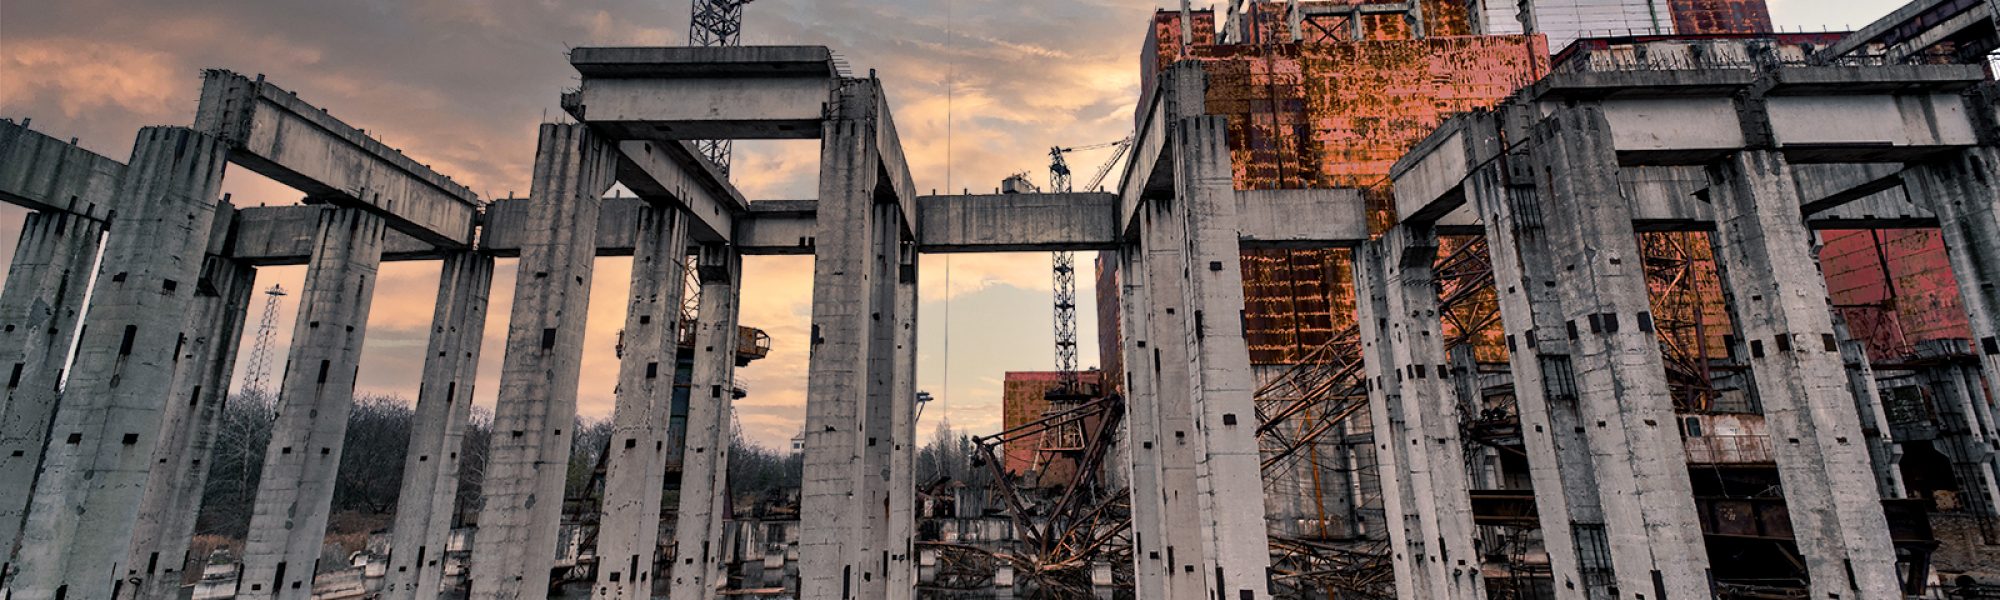 Reattore incompiuto - Unità 5 di Chernobyl